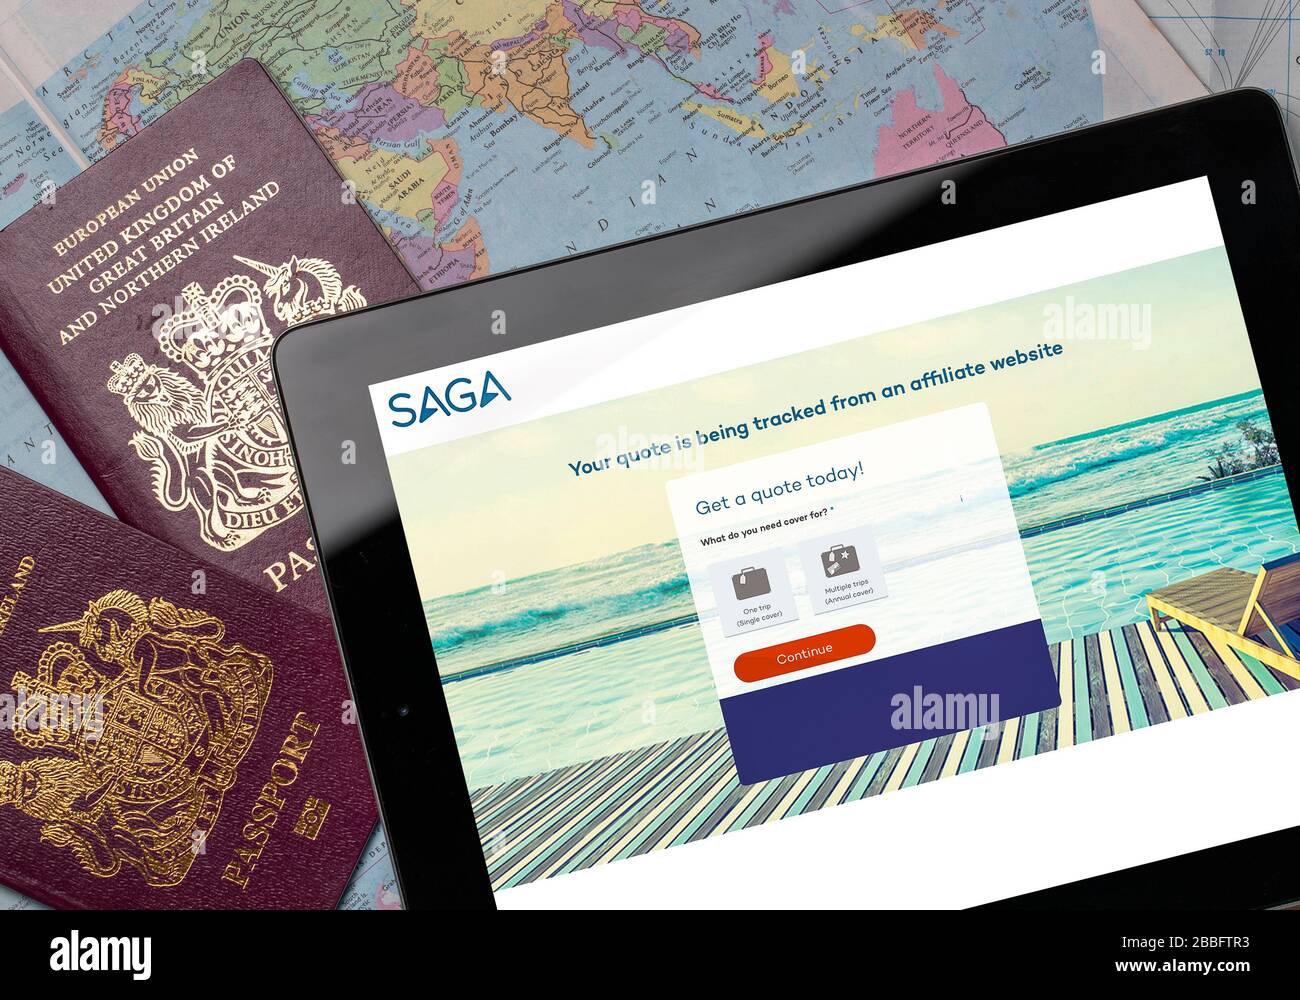 SAGA Travel Insurance Website auf einem iPad oder Tablet. (Nur redaktionelle Verwendung) Stockfoto